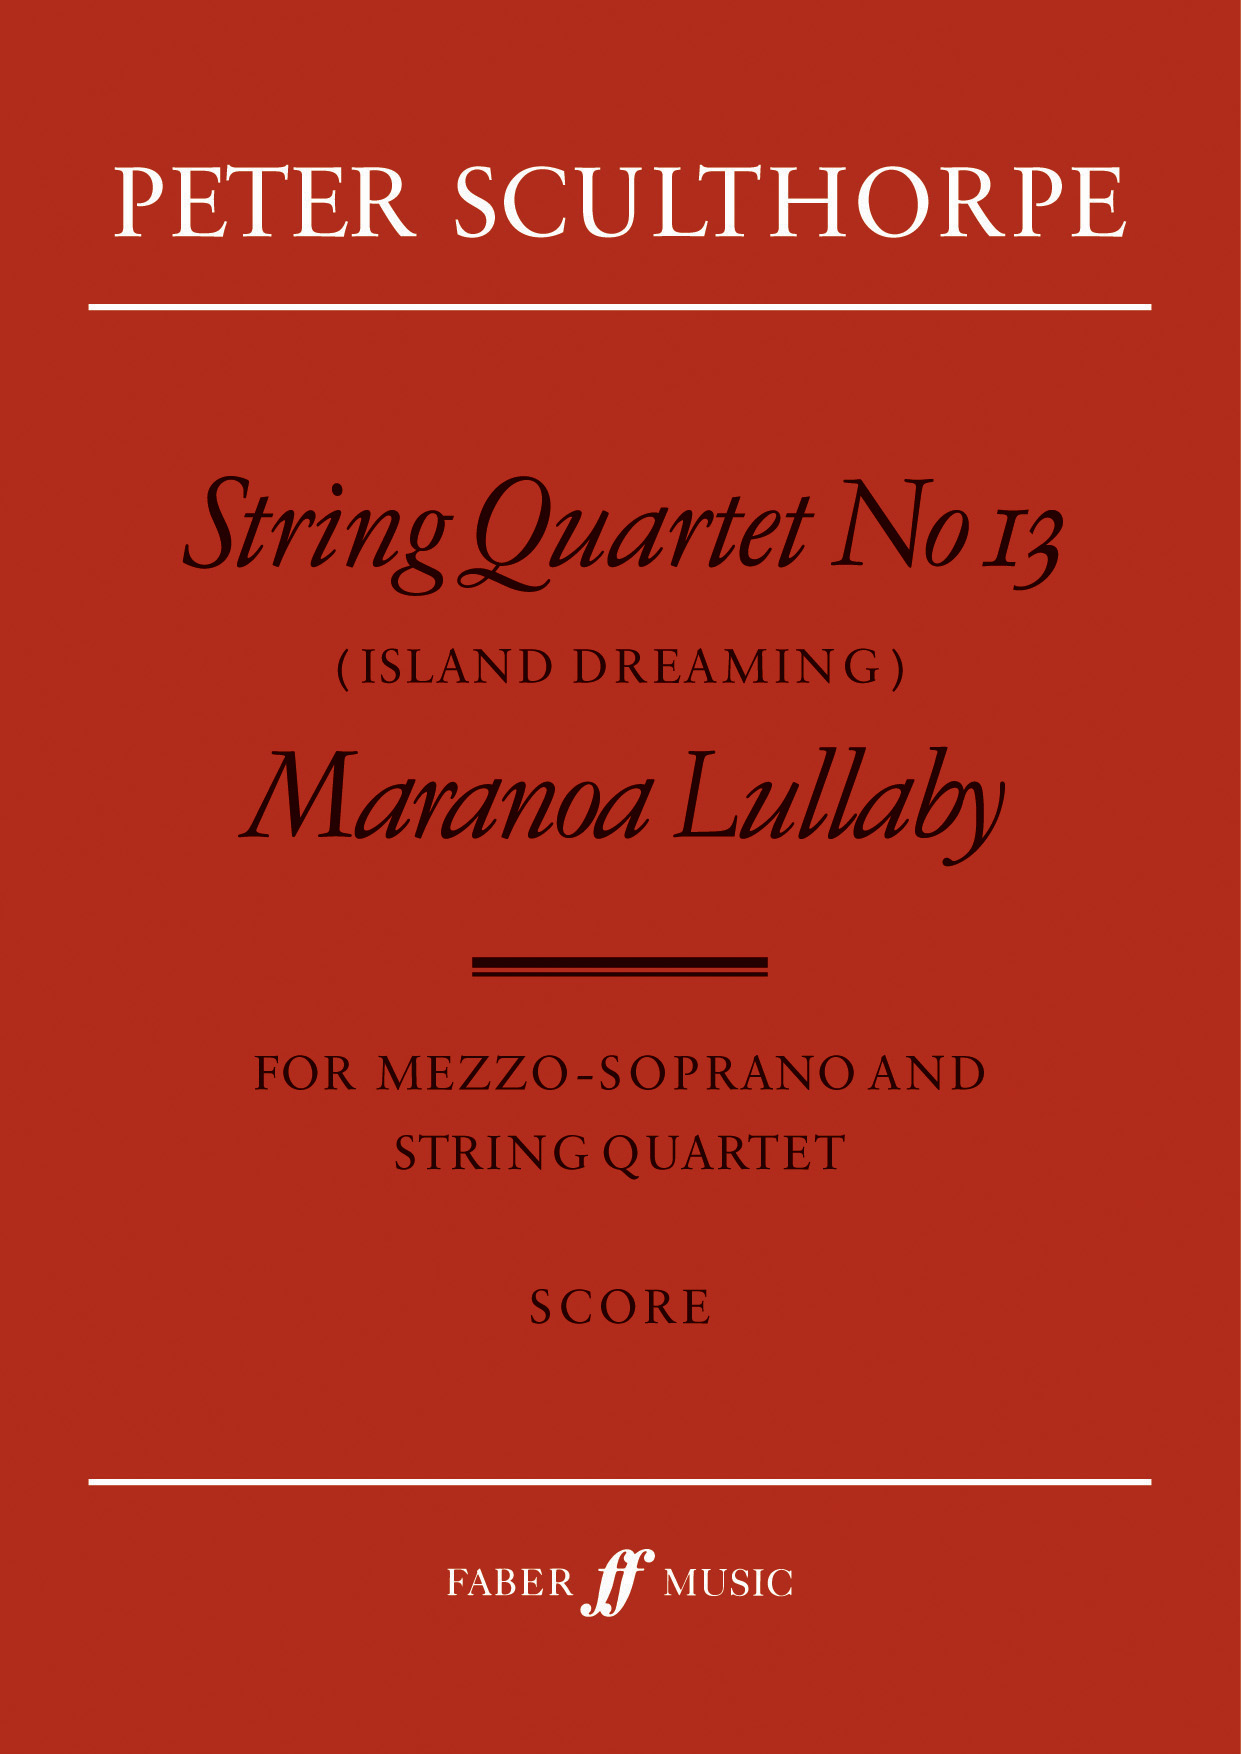 Peter Sculthorpe: String Quartet No.13/Maranoa: String Quartet